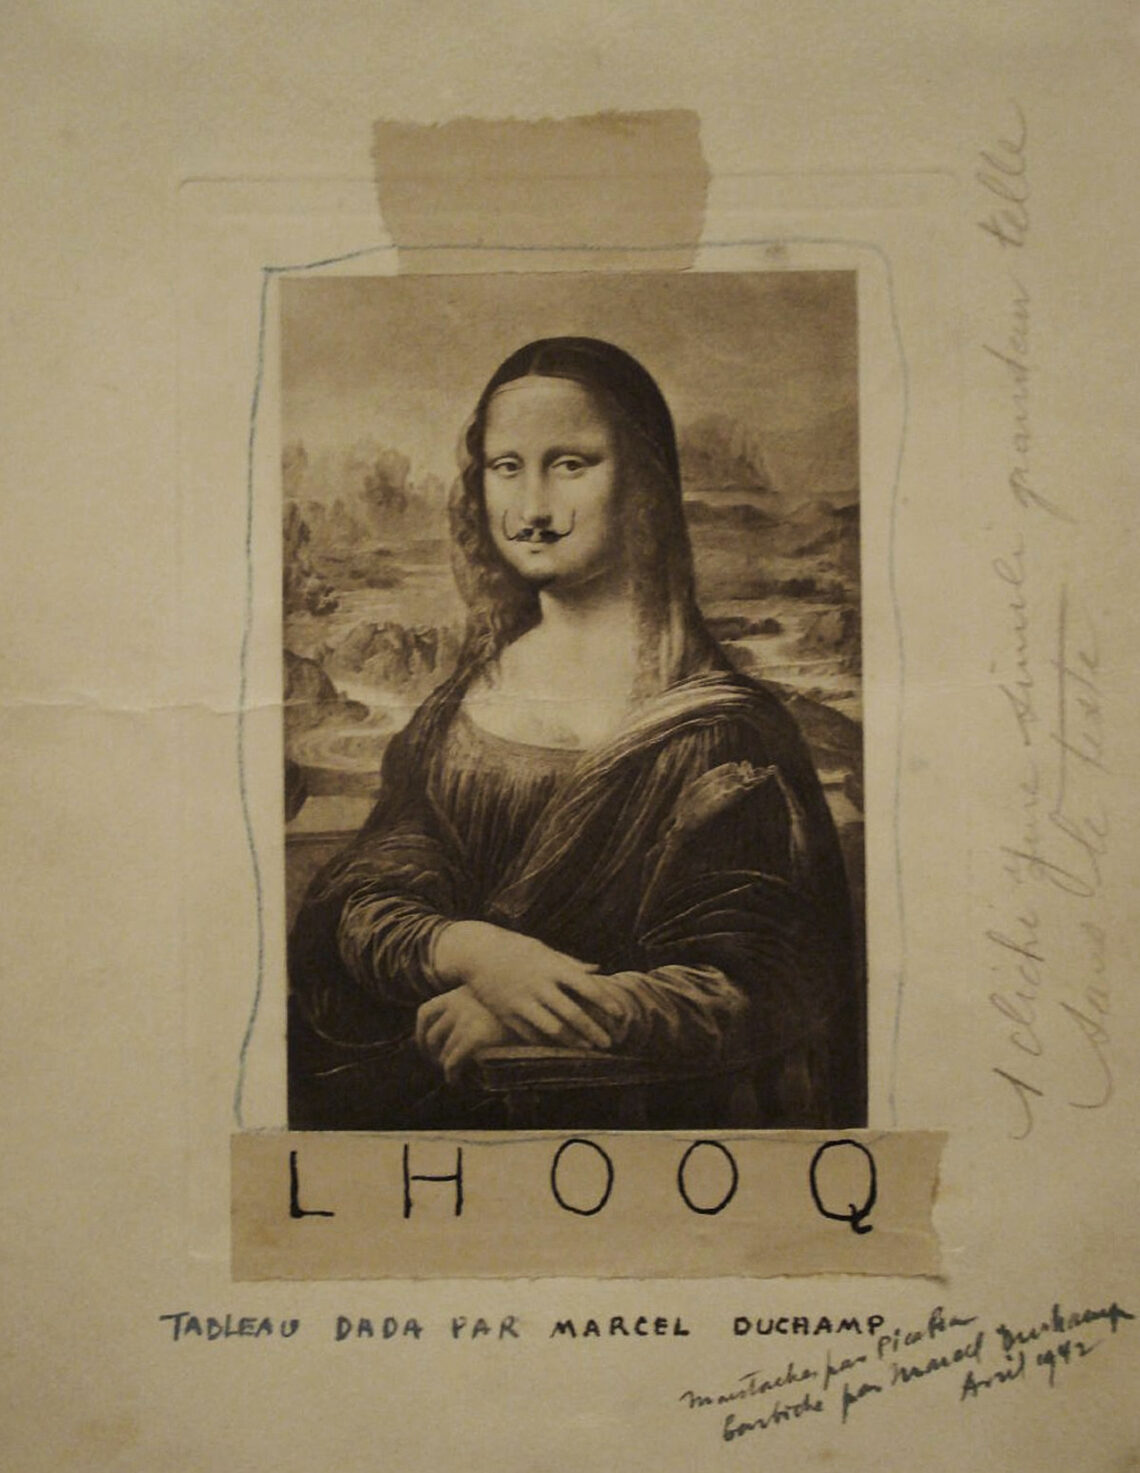 L.H.O.O.Q. di Marcel Duchamp-PODCARD